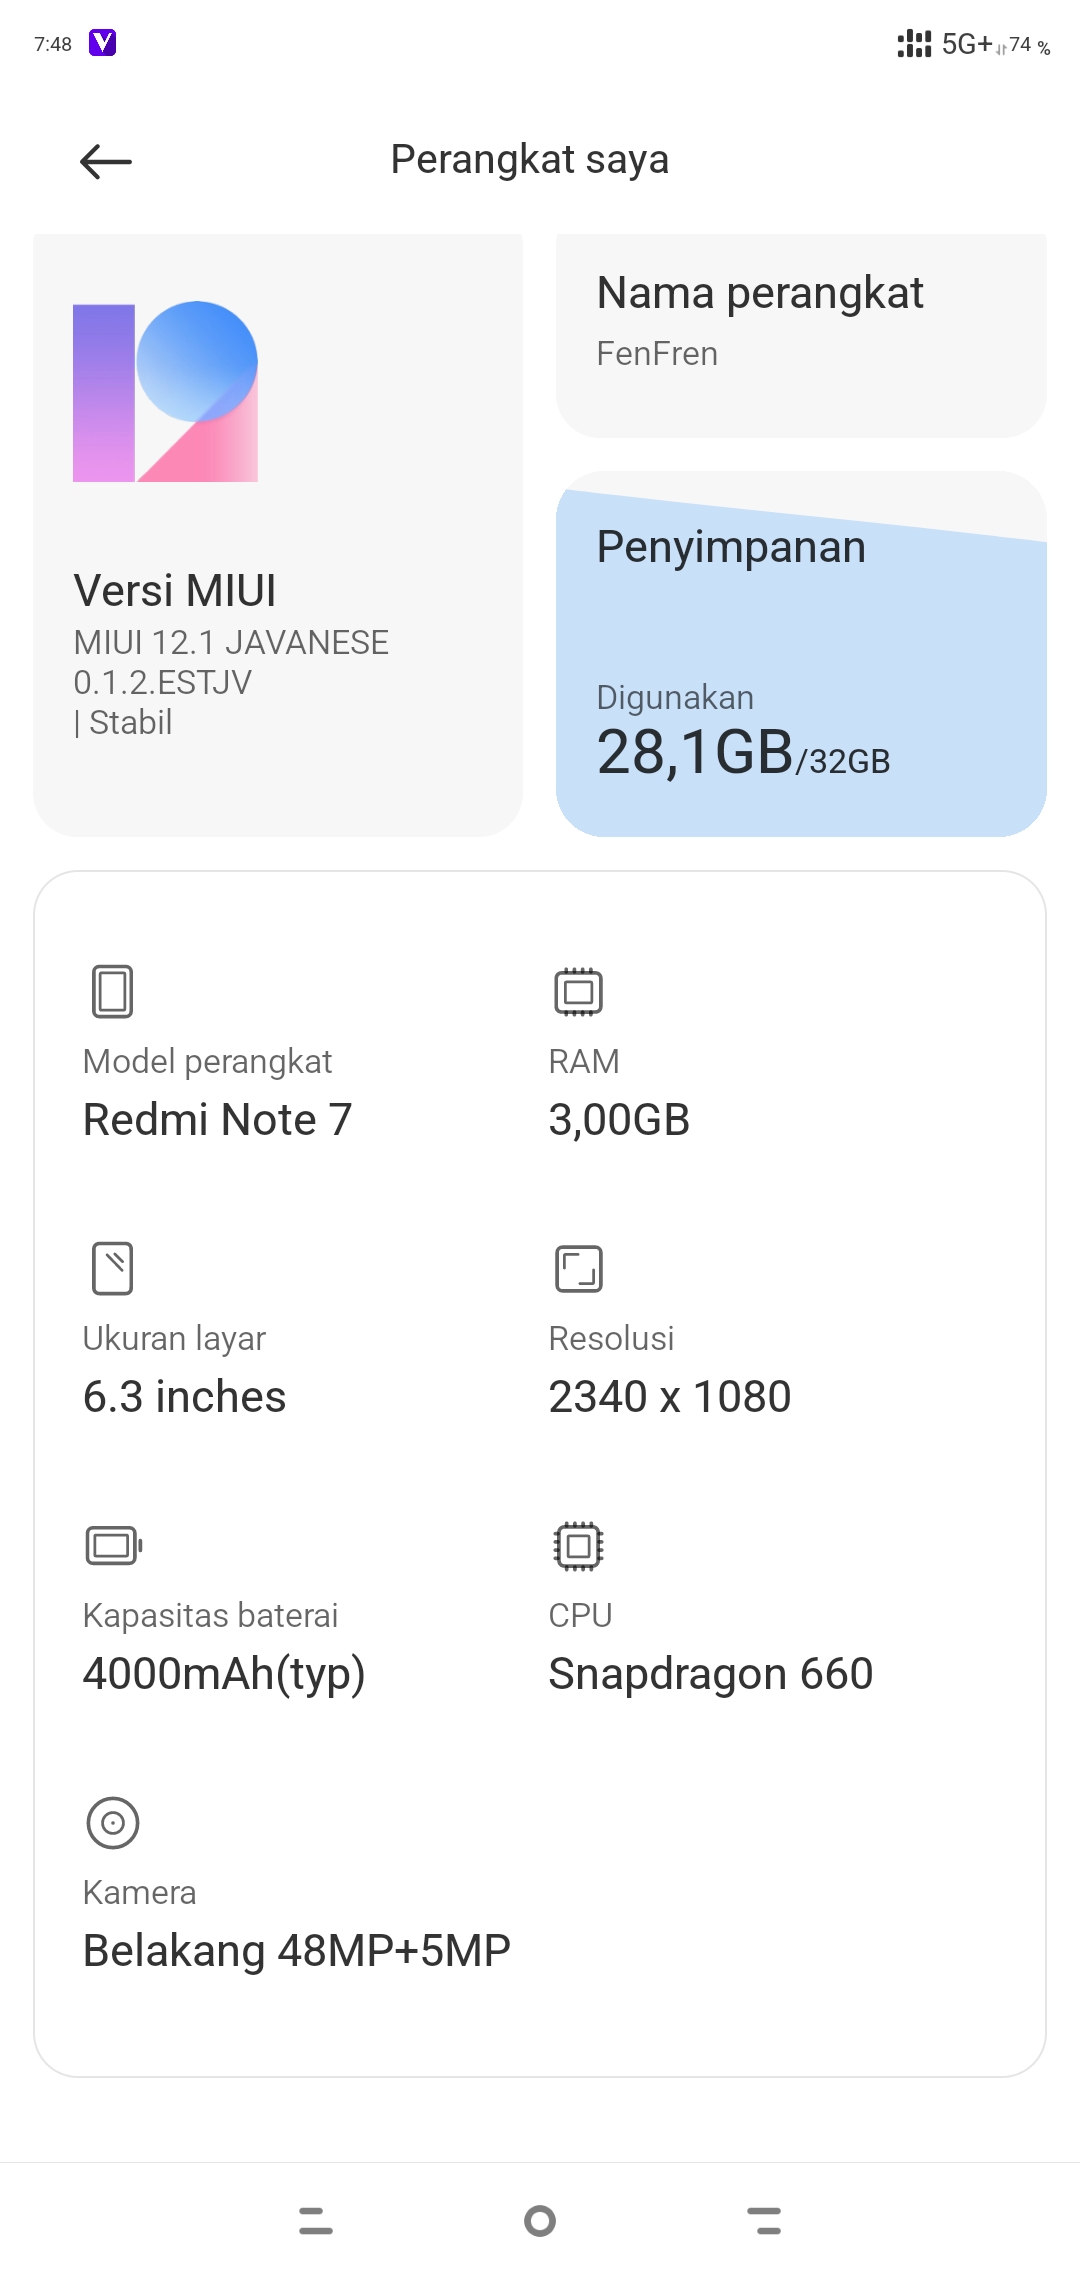 Найден Новый Файл Xiaomi